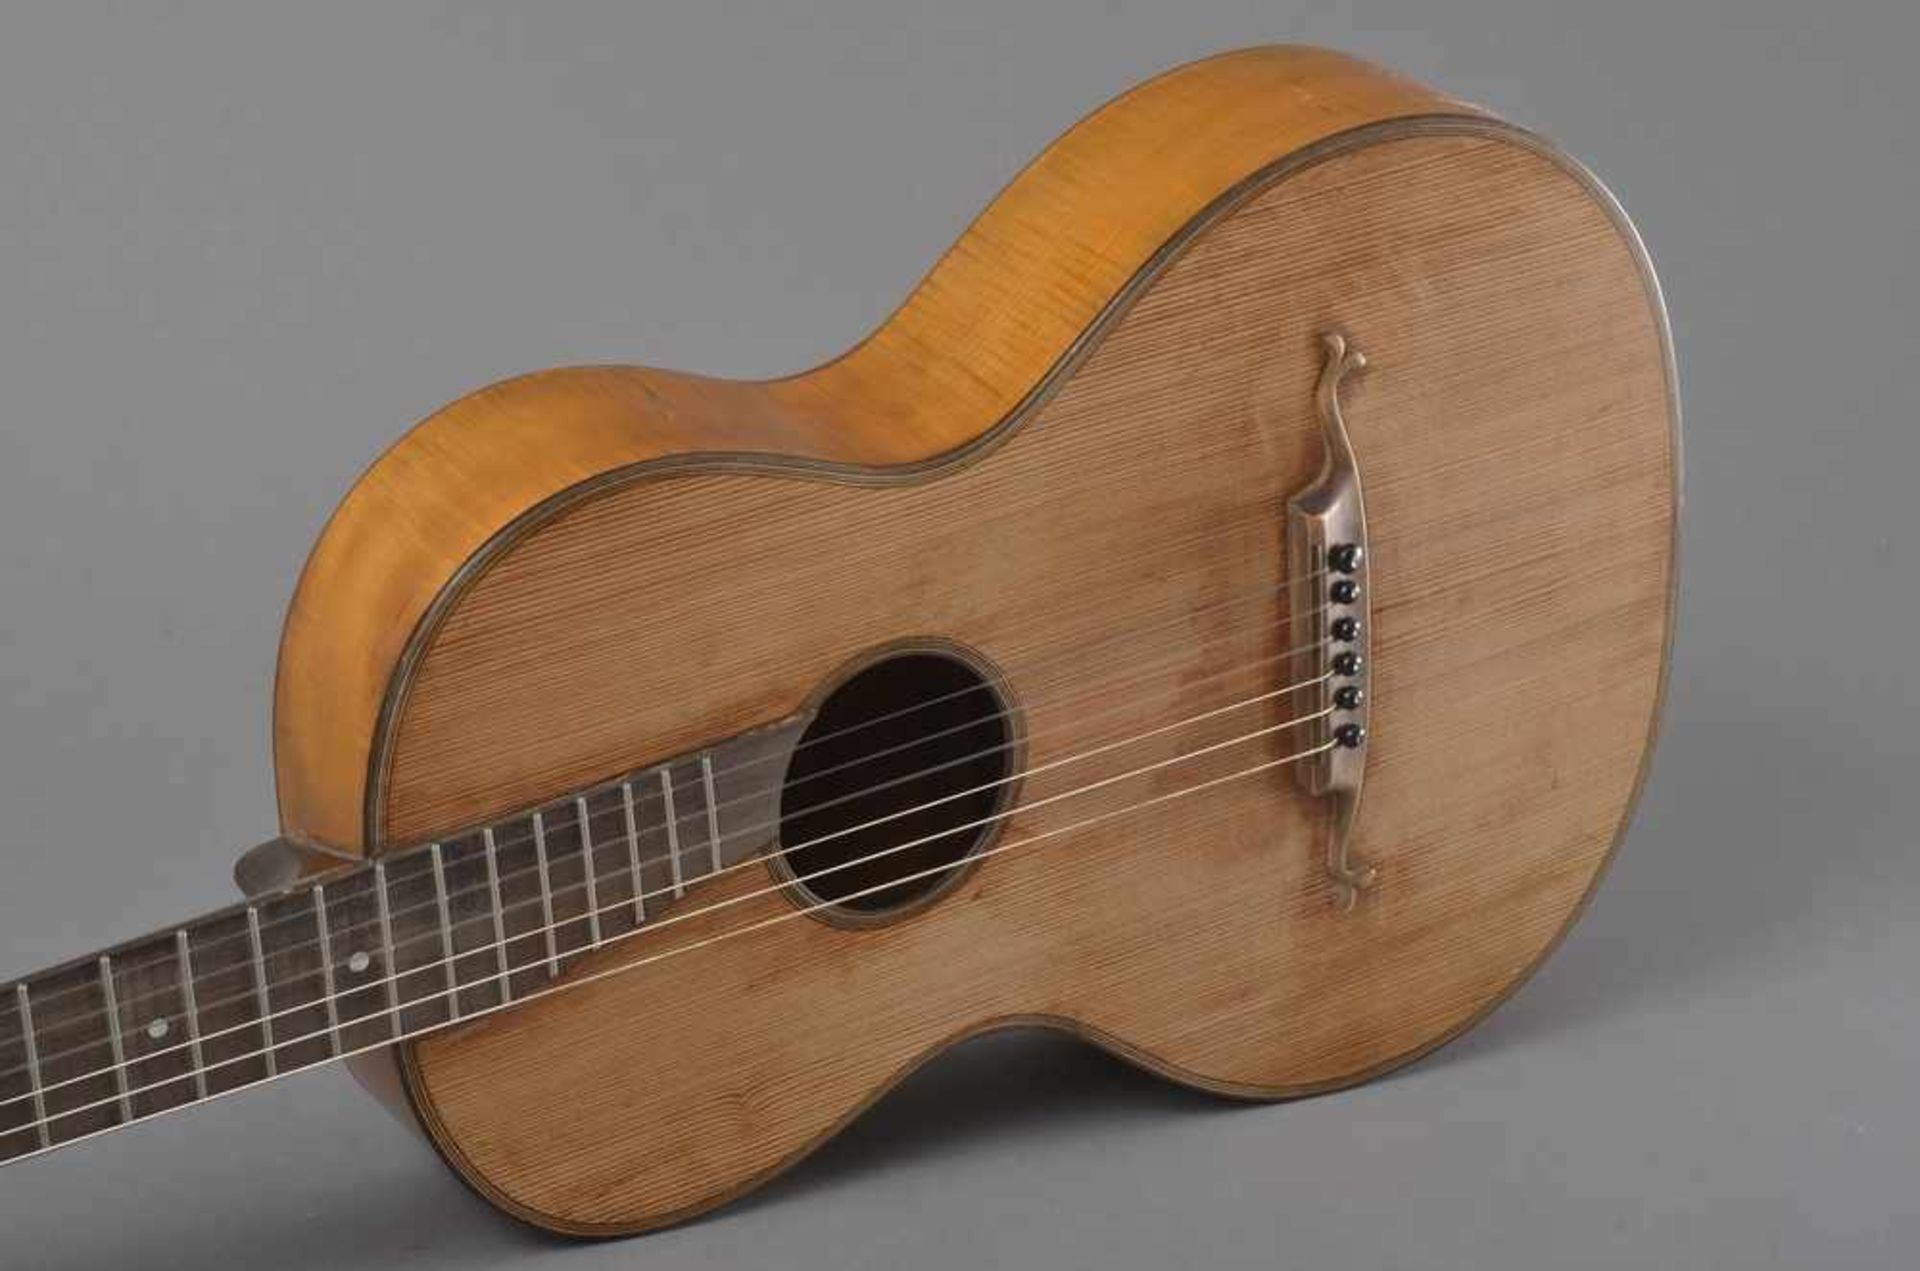 Historische Gitarre, Mensur 61,3cm, Gesamtlänge 93cm, Saitenhöhe 5mm, ca. 100 Jahre alt, spielbar - Image 4 of 7